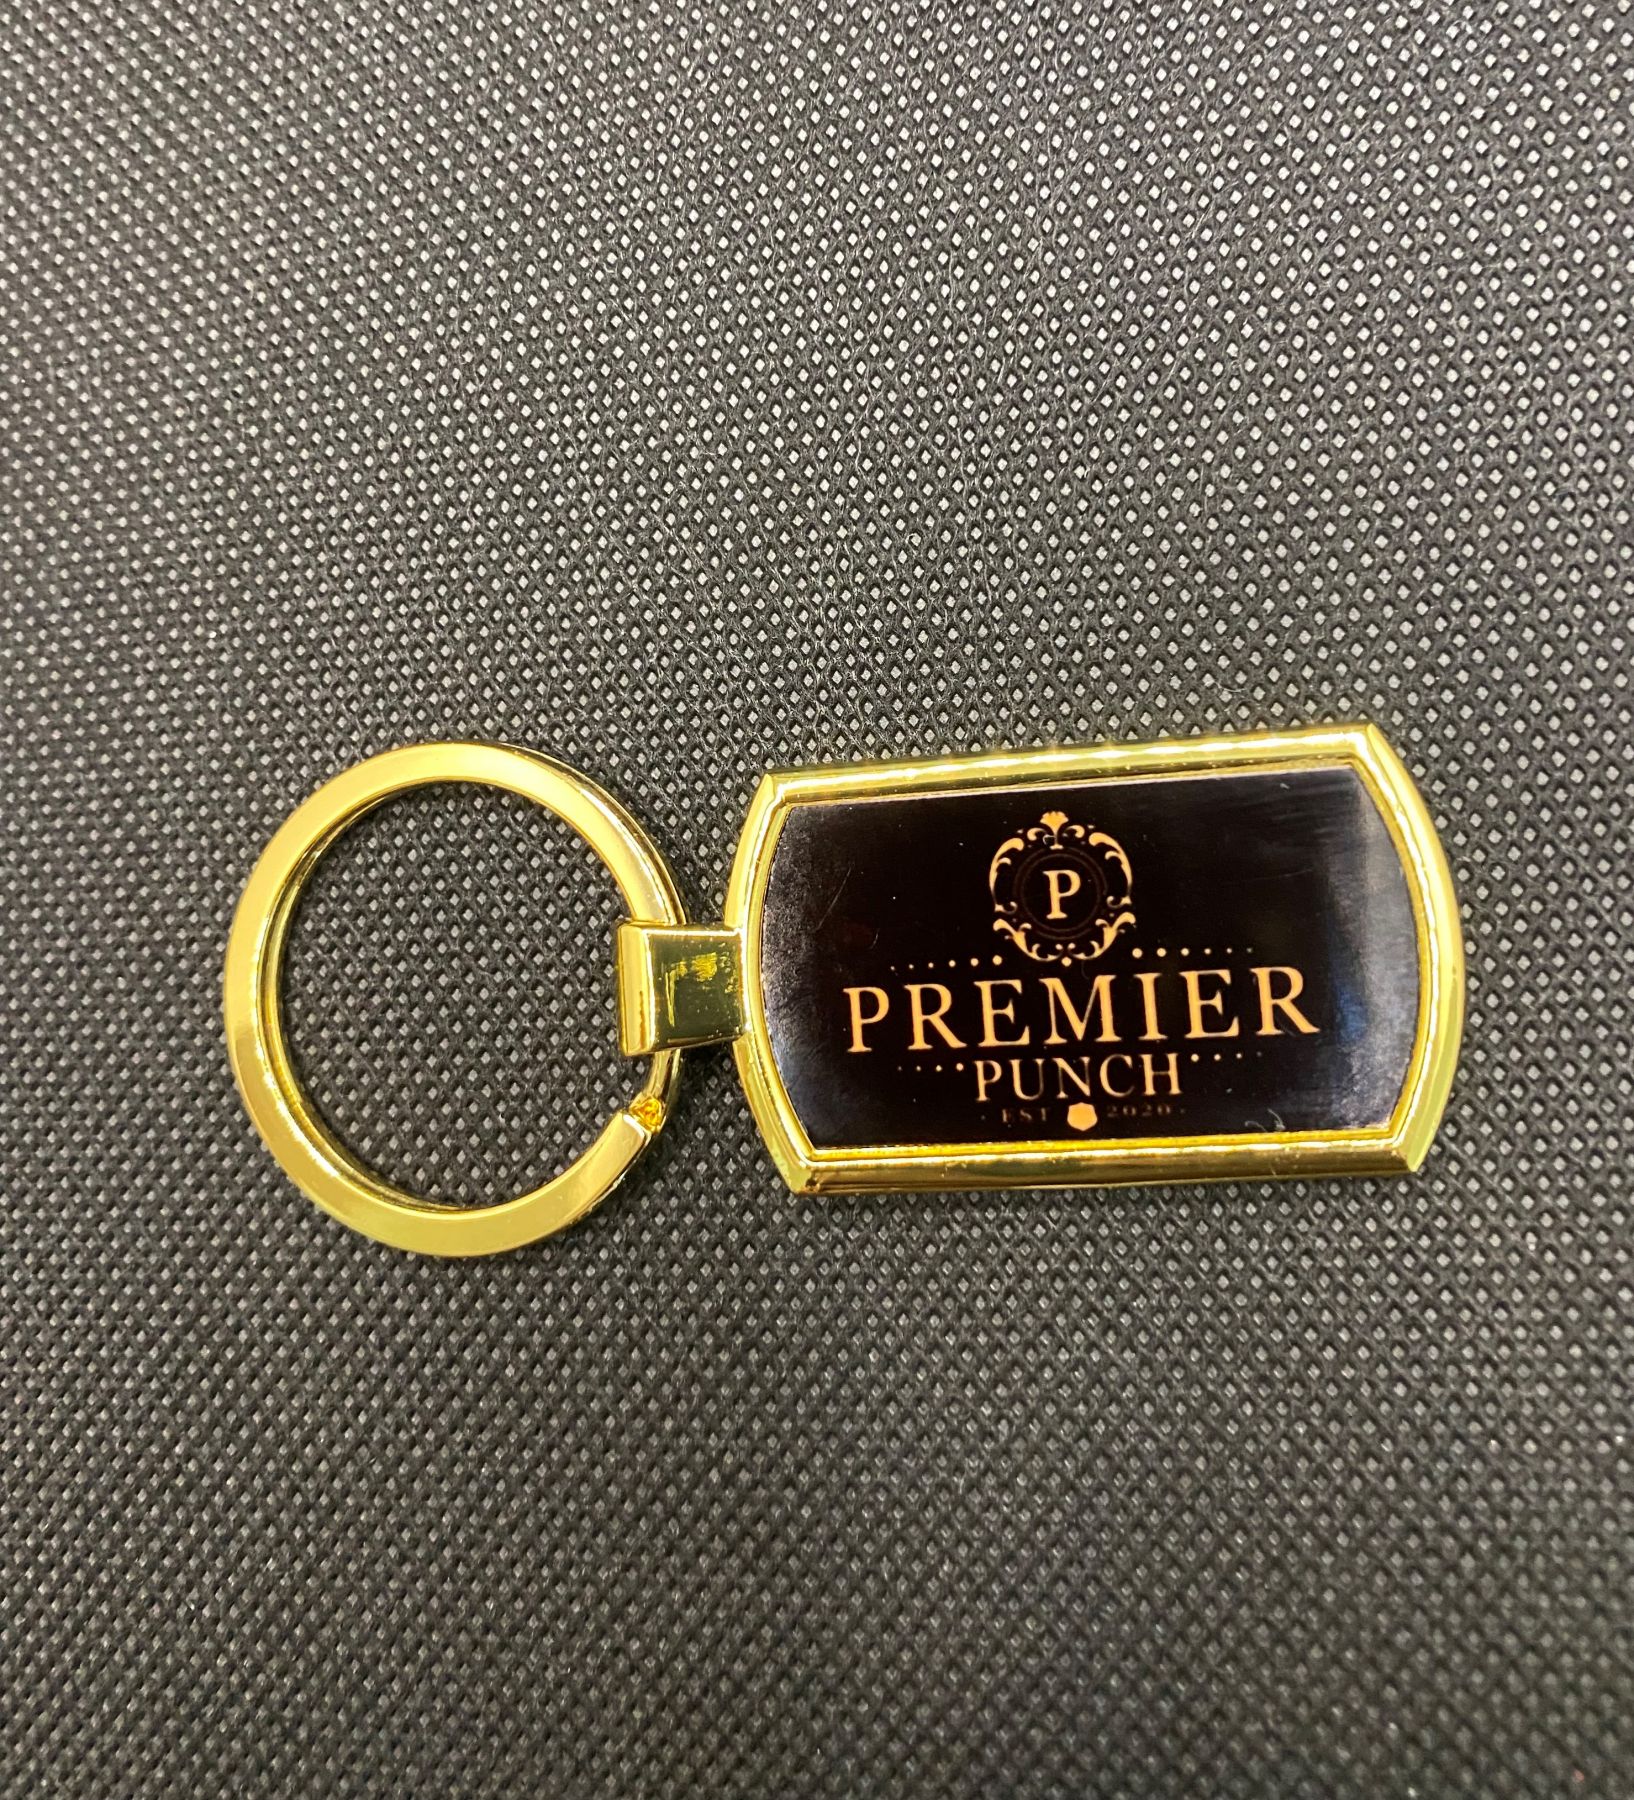 Premier Punch Branded Keyring